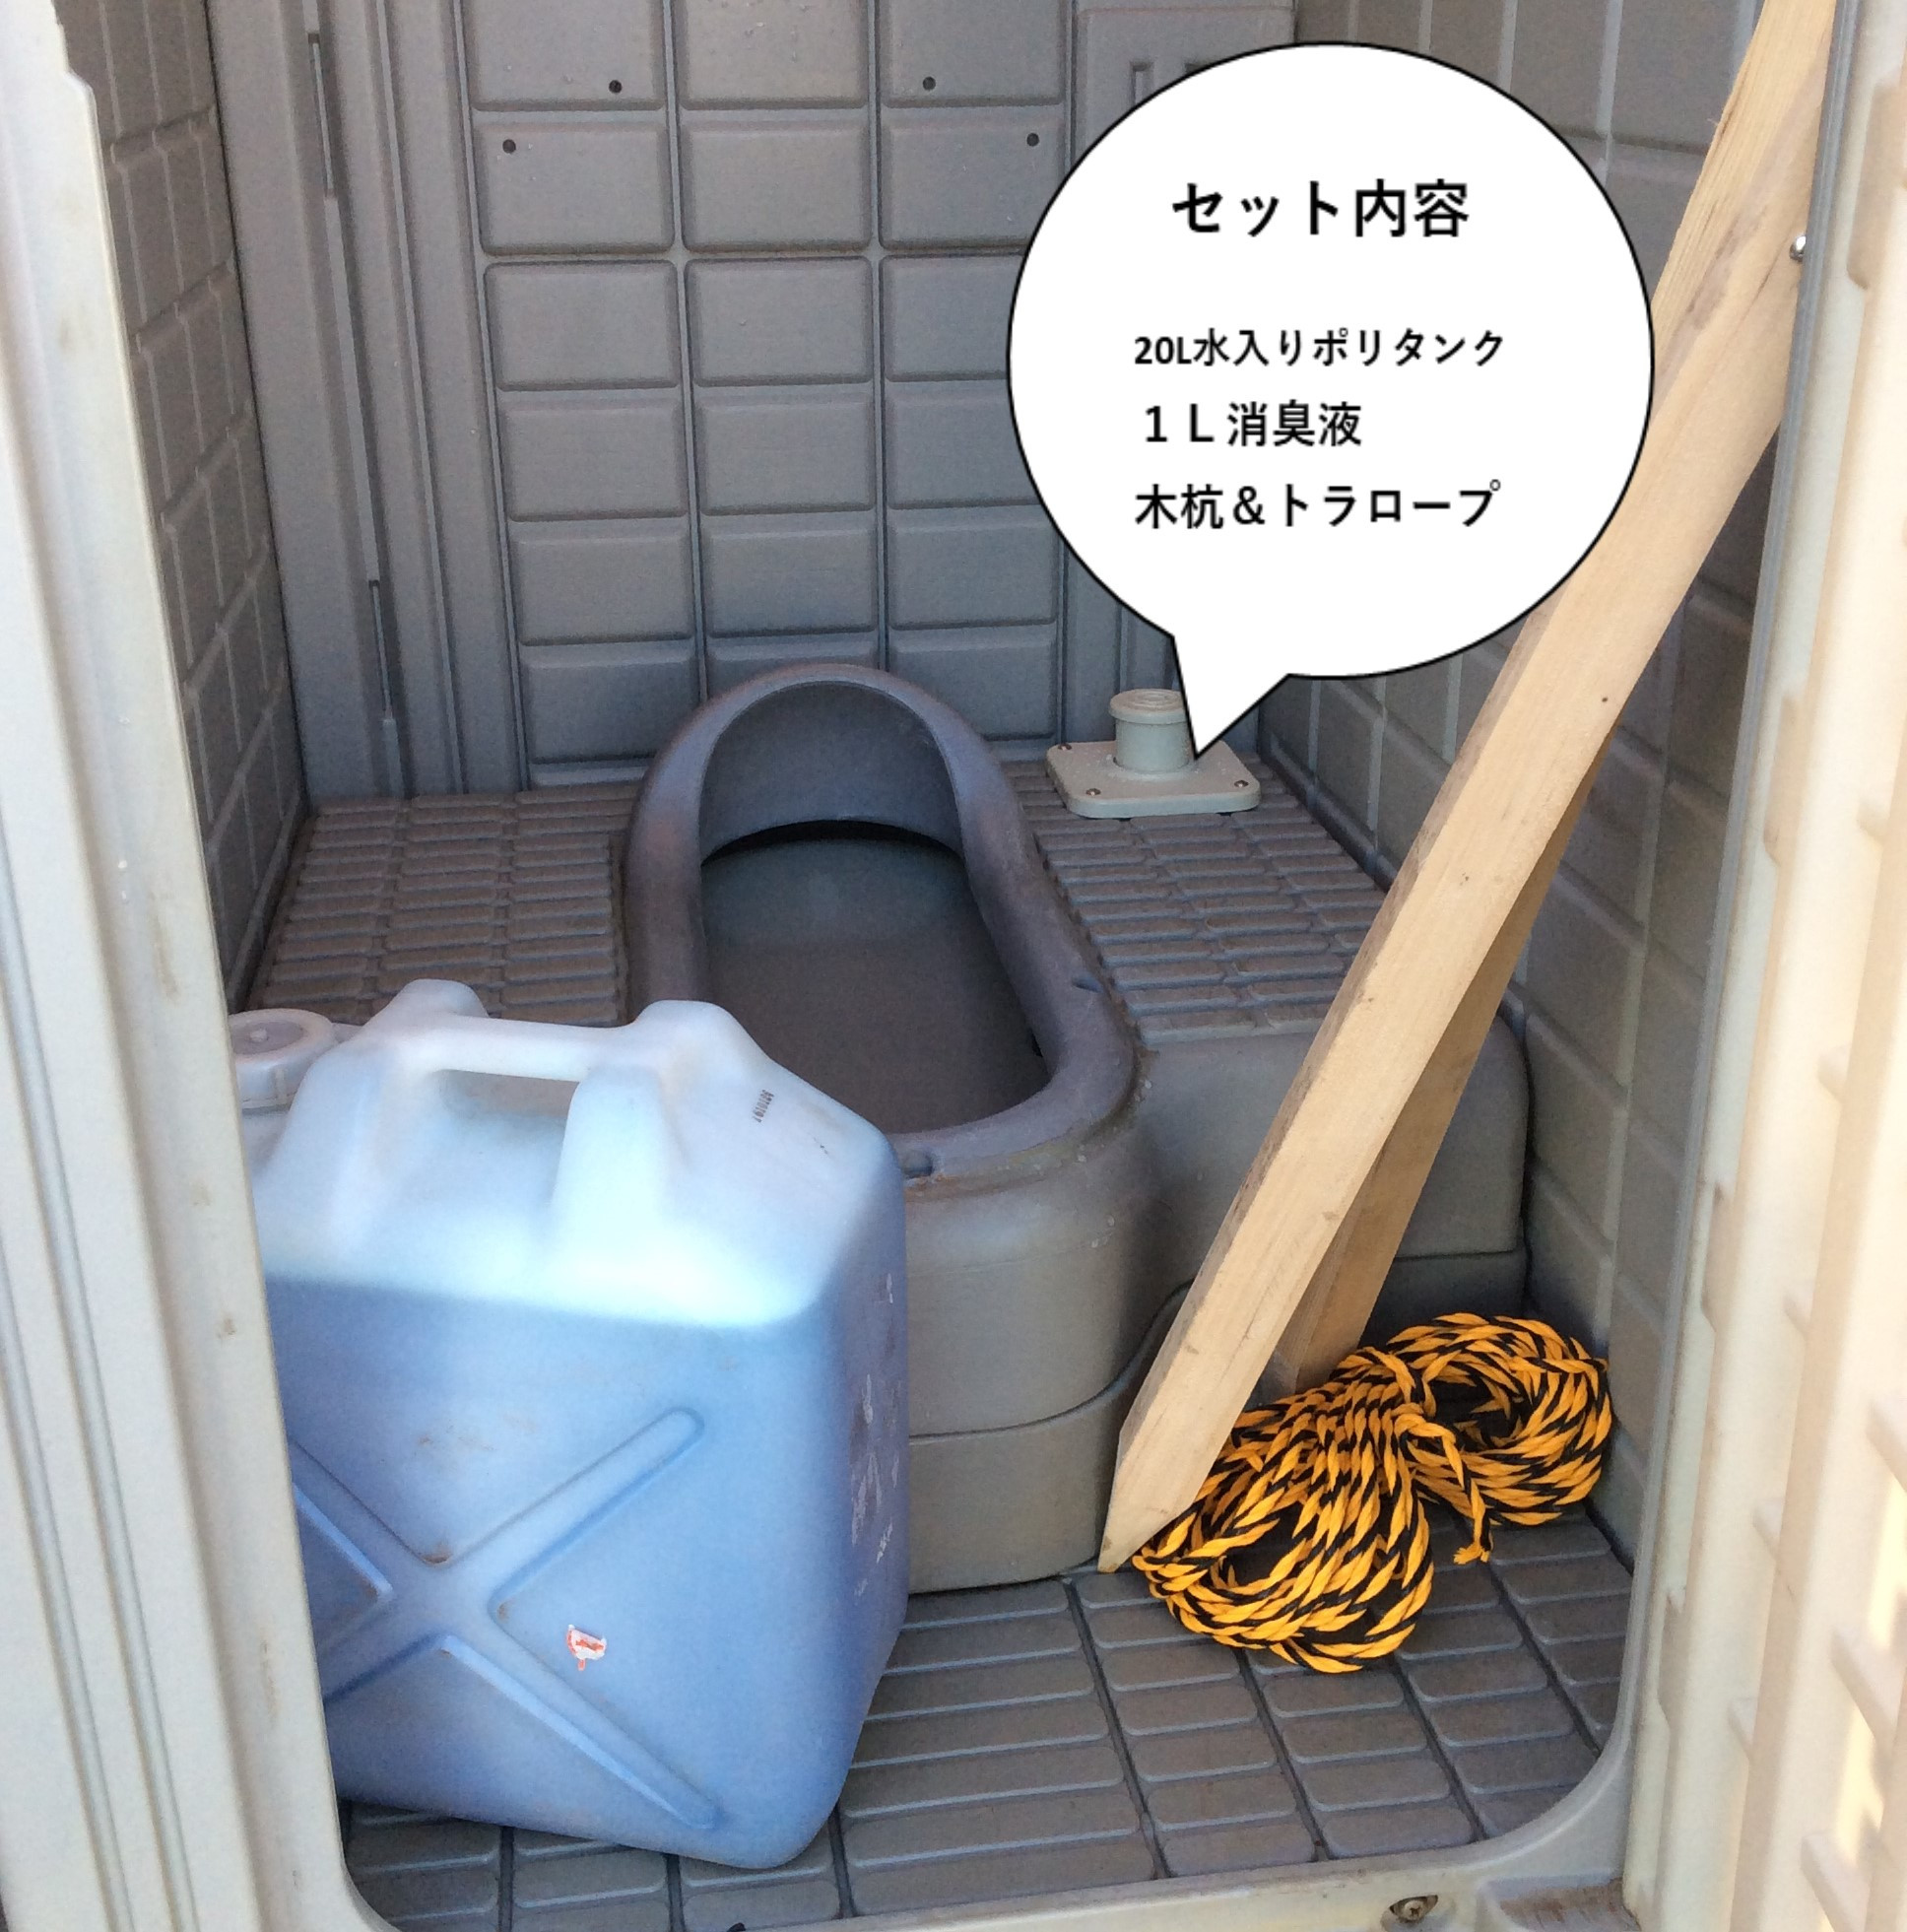 洗浄済み】大・小便器併設、仮設トイレ(汲み取り式) - 大阪府のその他